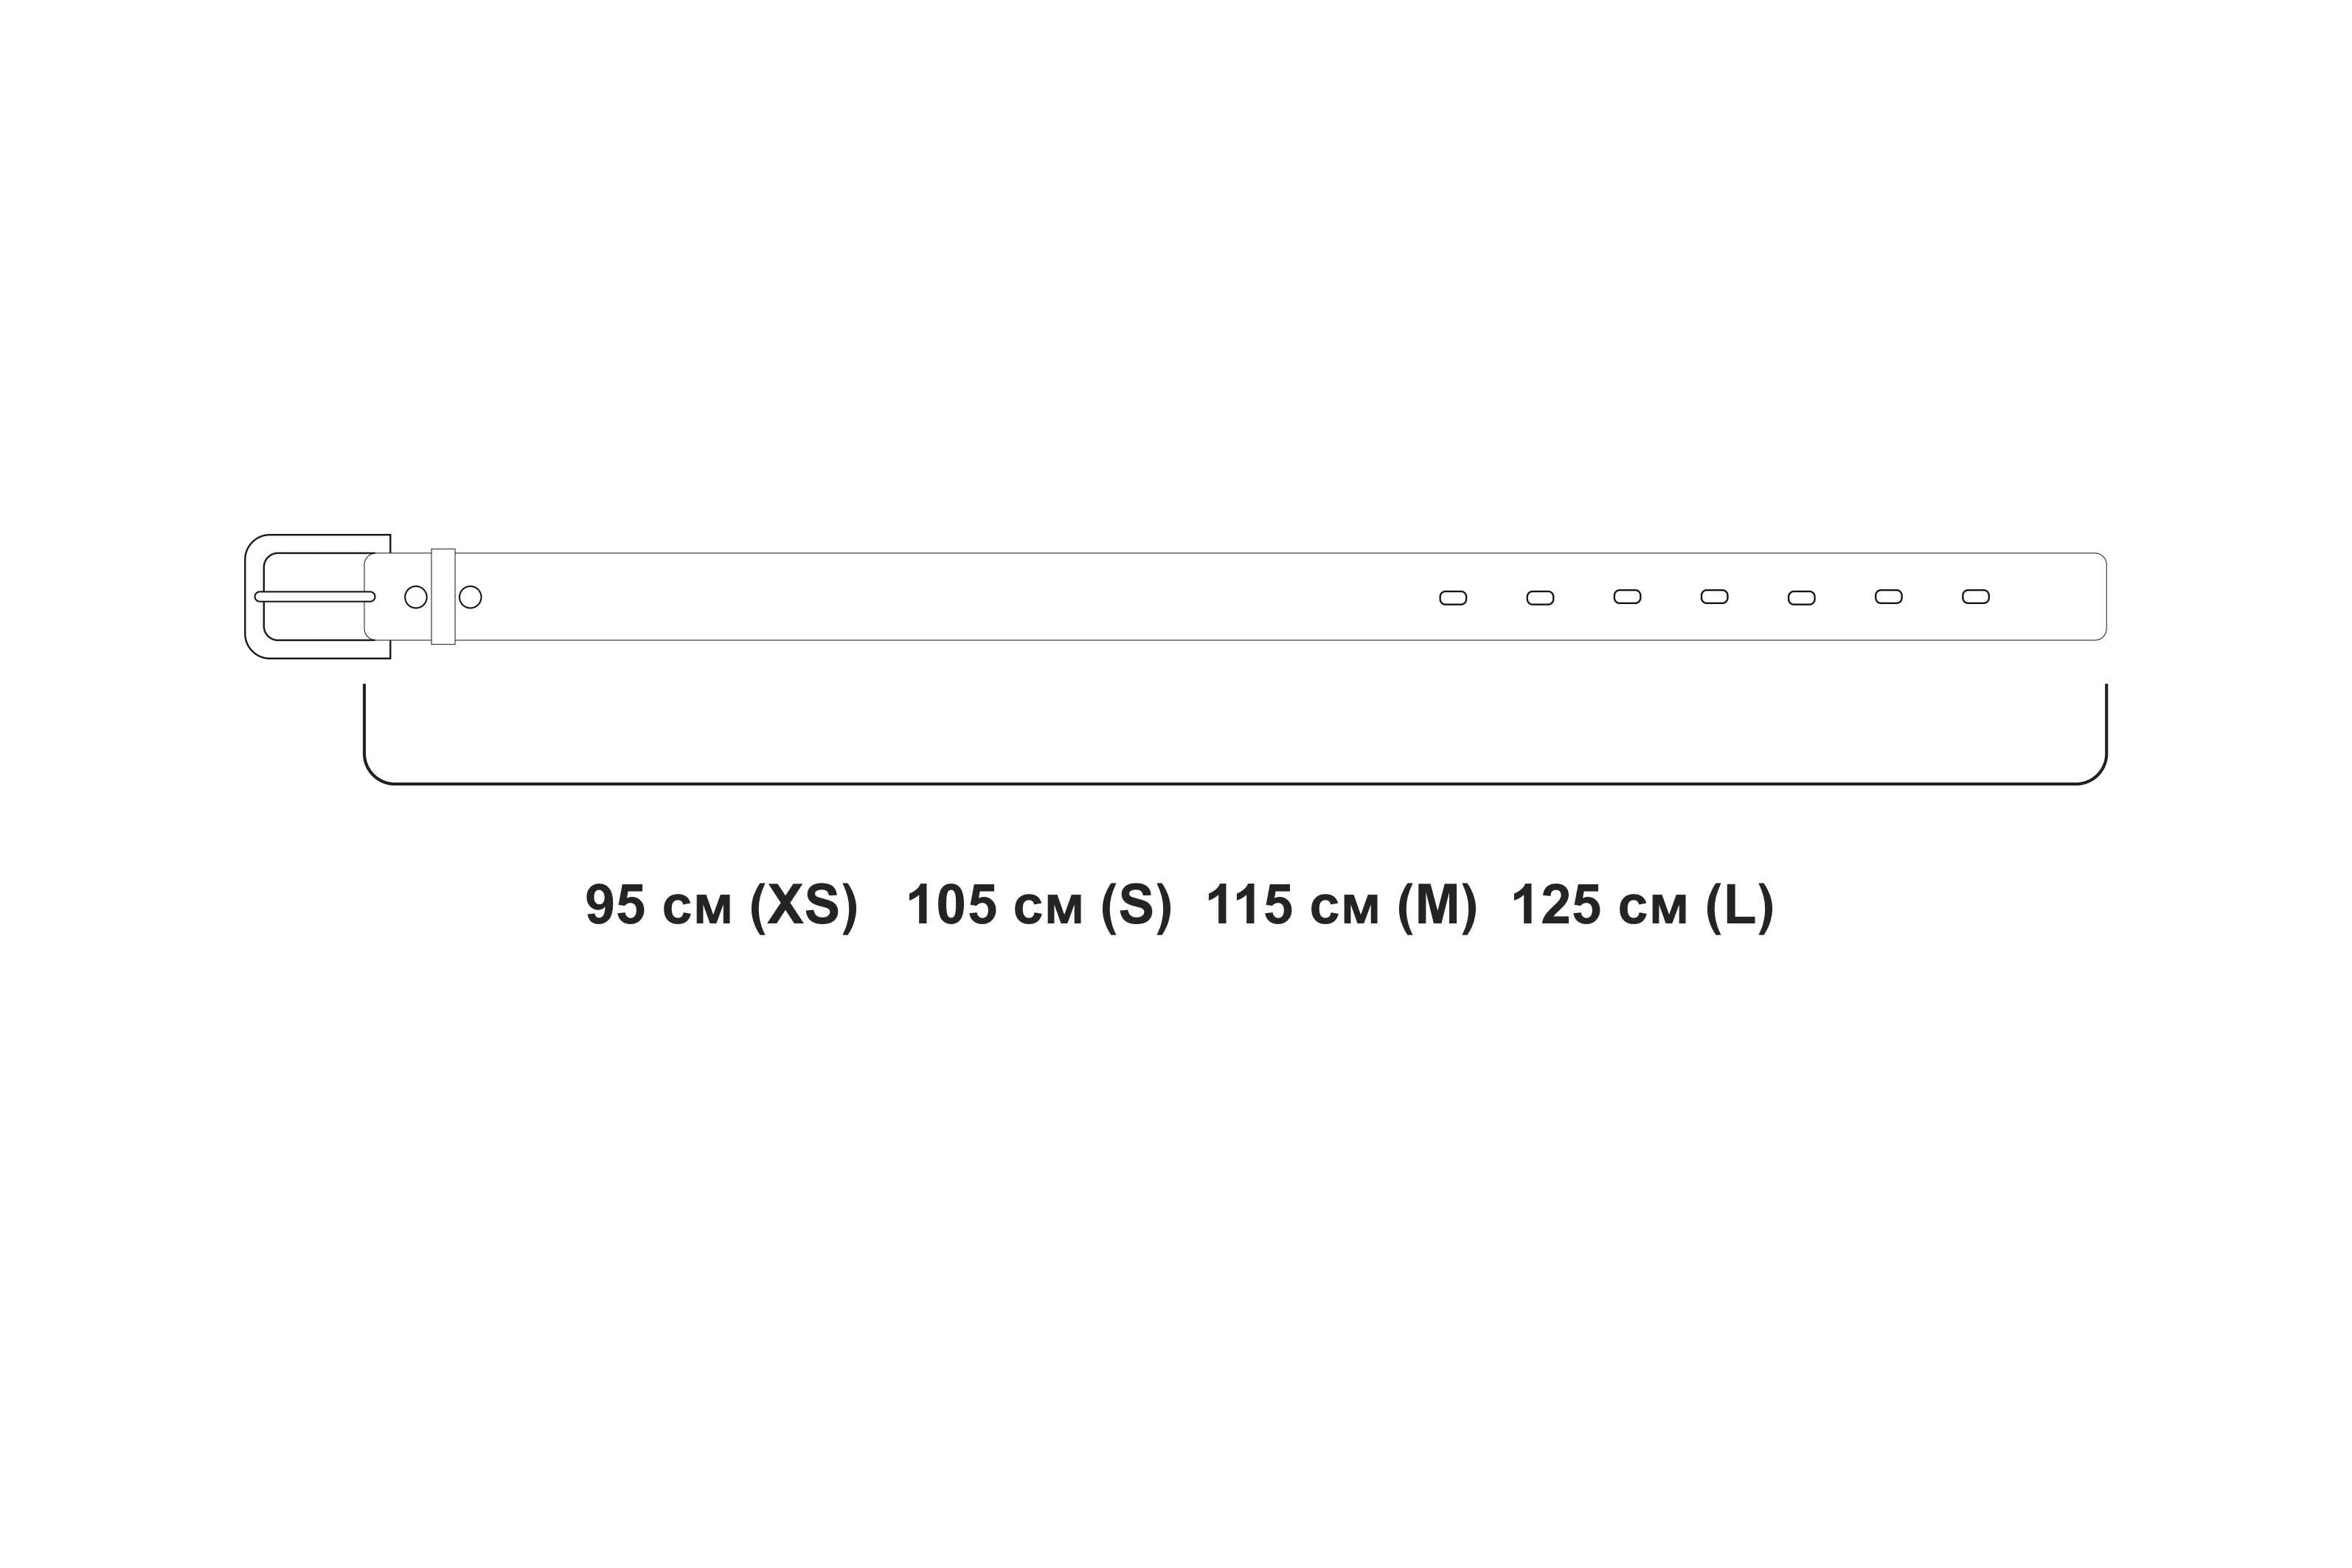 Ремень - Колорадо (тонкий) Натуральная кожа Латунная фурнитура Ширина ремня: 3 см Доступные размеры:  105 см (S) 115 см (M) 125 см (L) Нужный размер можно указать в комментарии при оформлении заказа. 